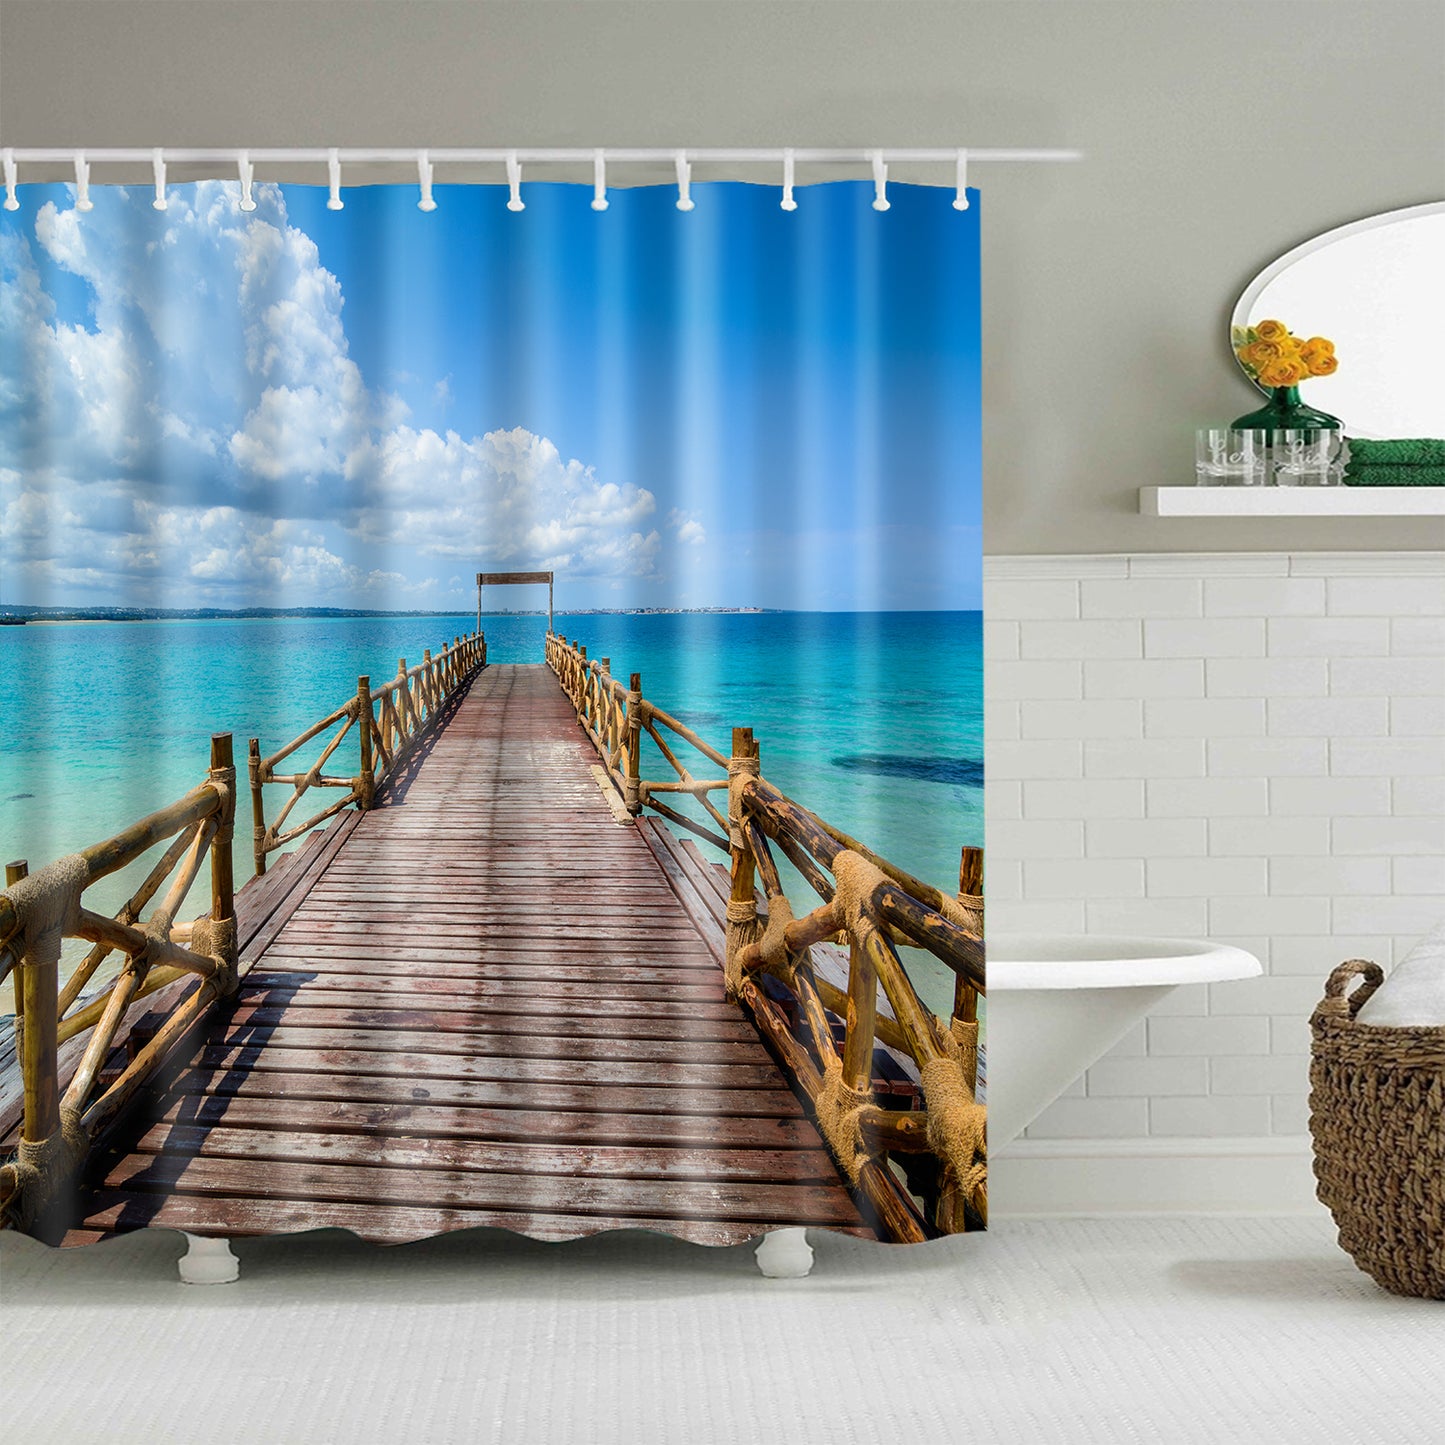 Blue Sea Sky Pier Wooden Boardwalk Shower Curtain